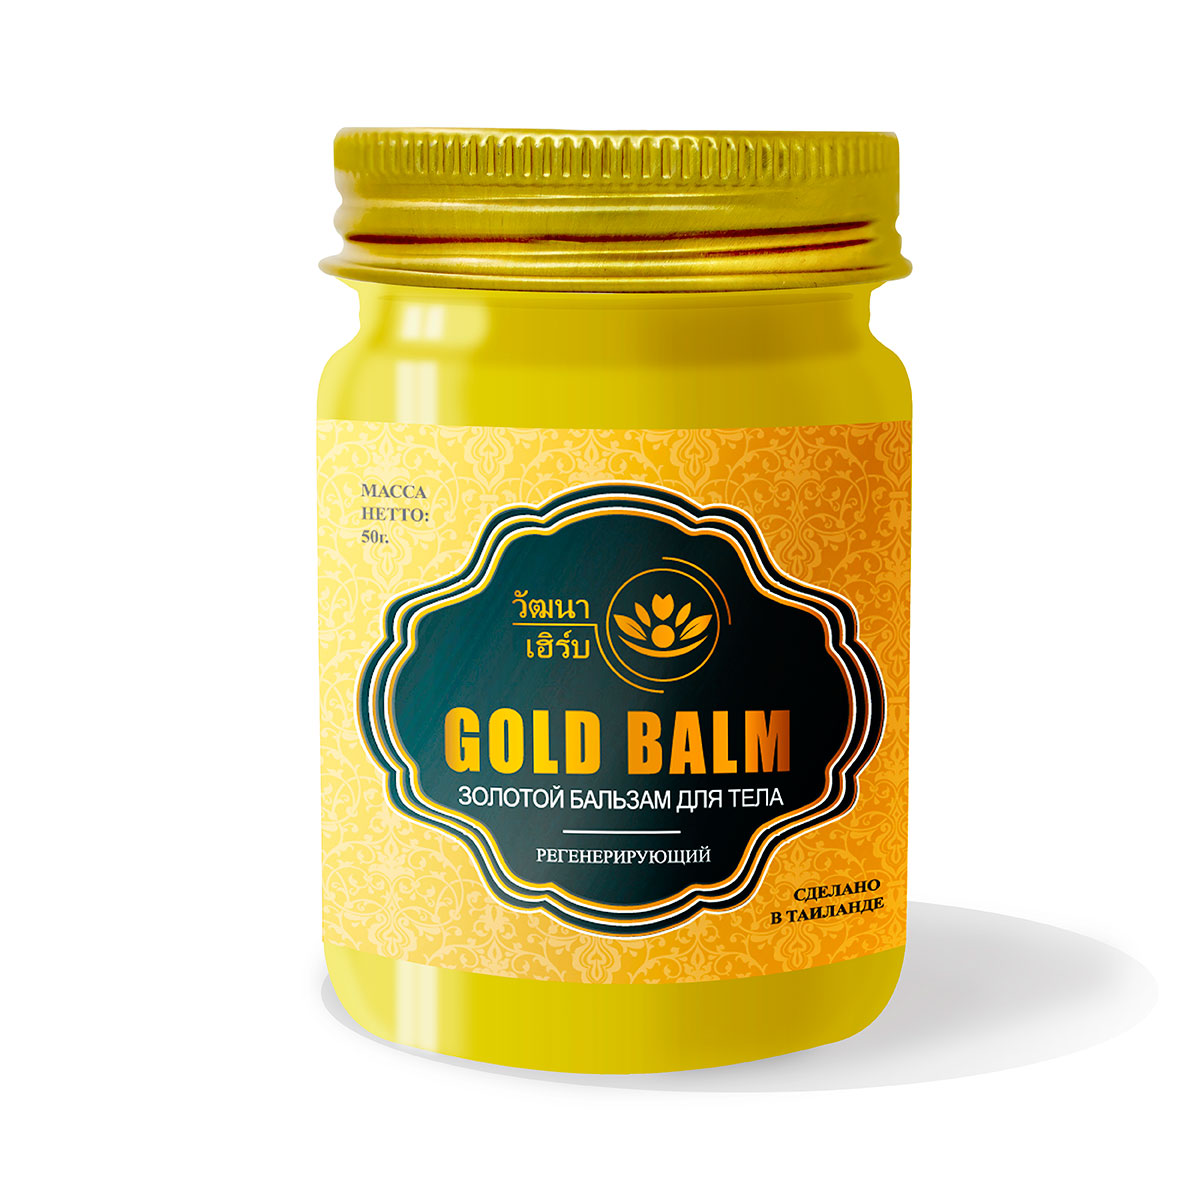 Купить Тайский Золотой бальзам для тела регенерирующий Wattana Herb, 50гр.